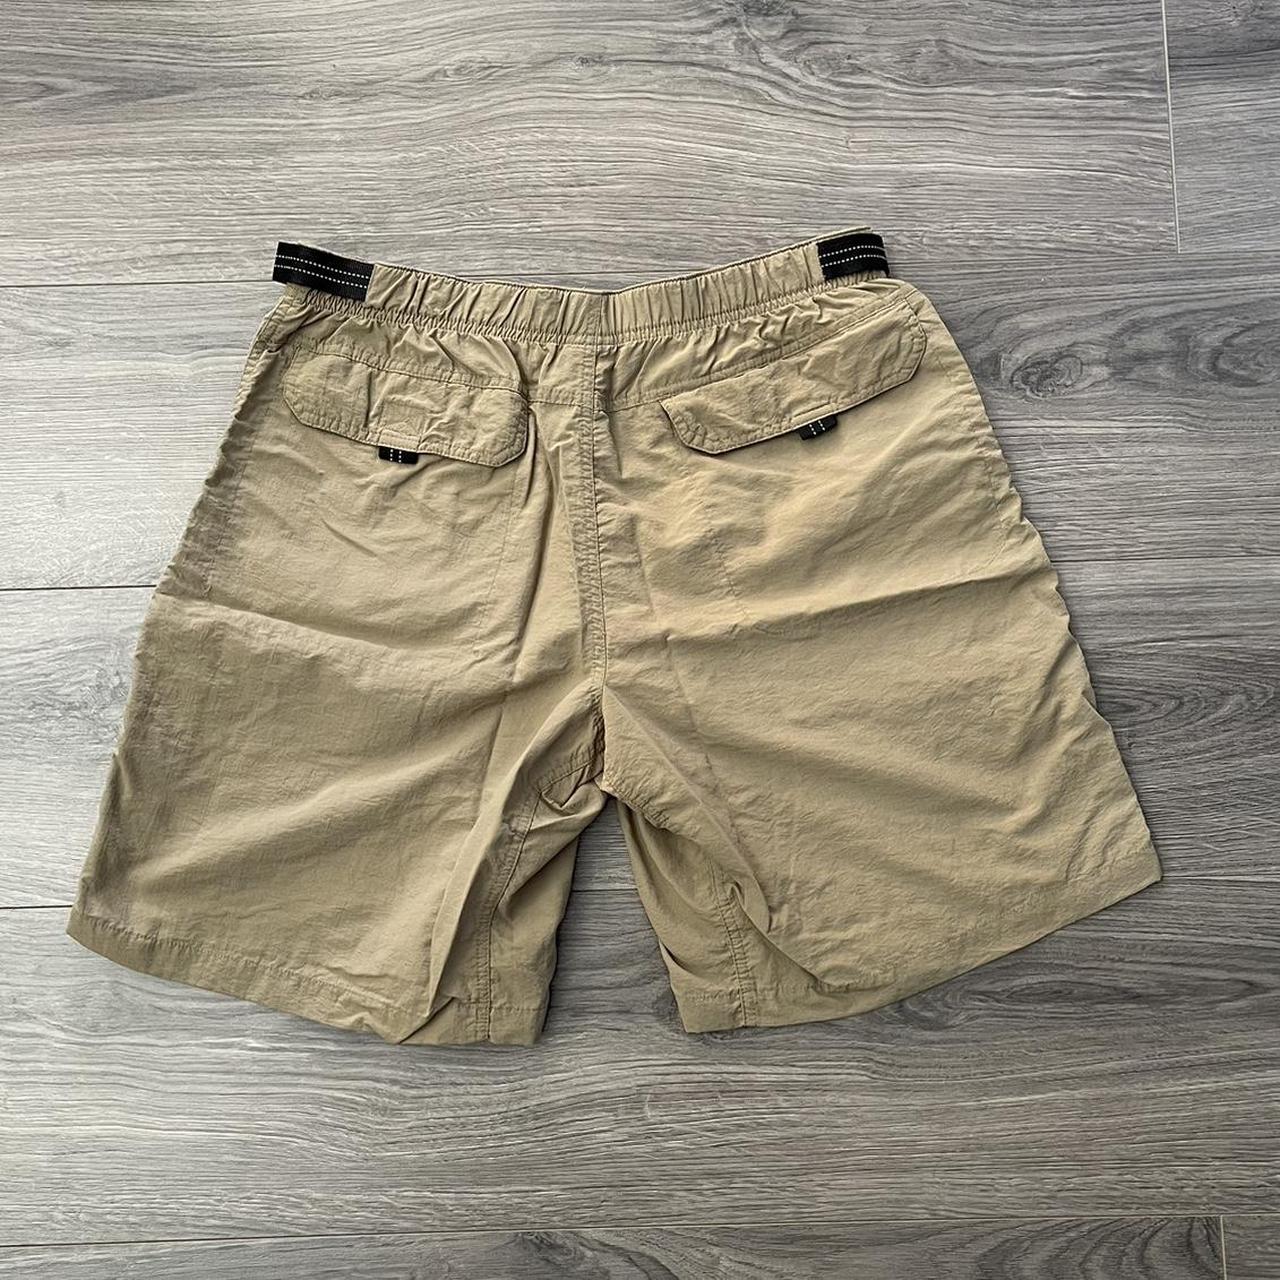 Hi-Tec Men's Tan Shorts (3)